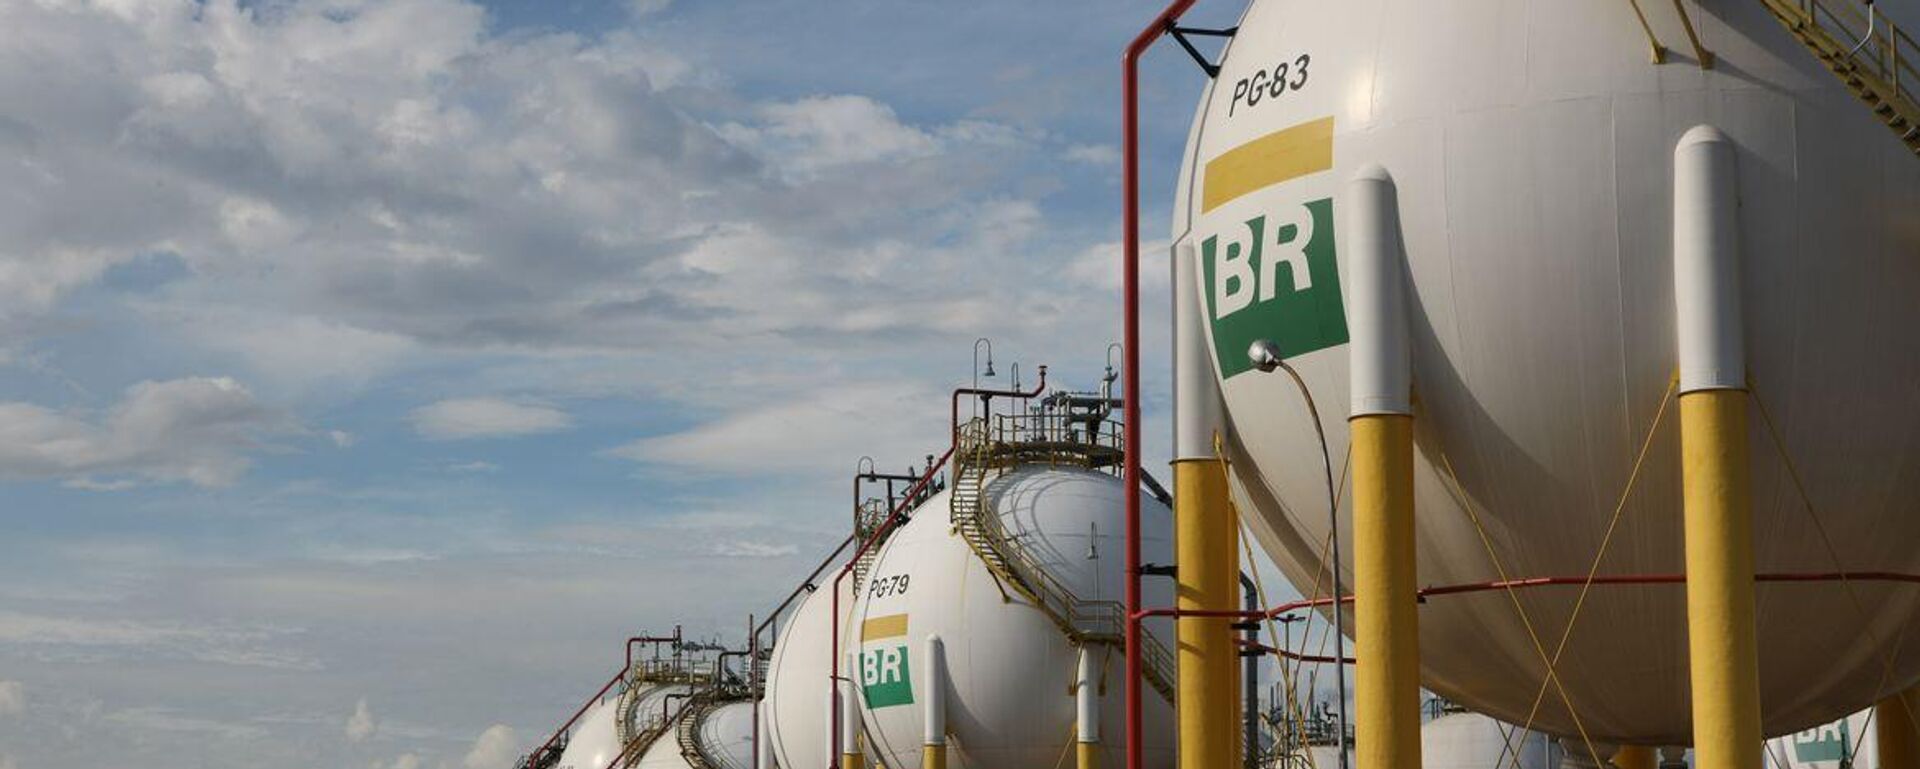 Esferas de armazenamento de gás liquefeito de petróleo (GLP) da Refinaria Duque de Caxias (Reduc), da Petrobras. Duque de Caxias (RJ), 20 de março de 2013 - Sputnik Brasil, 1920, 08.01.2023